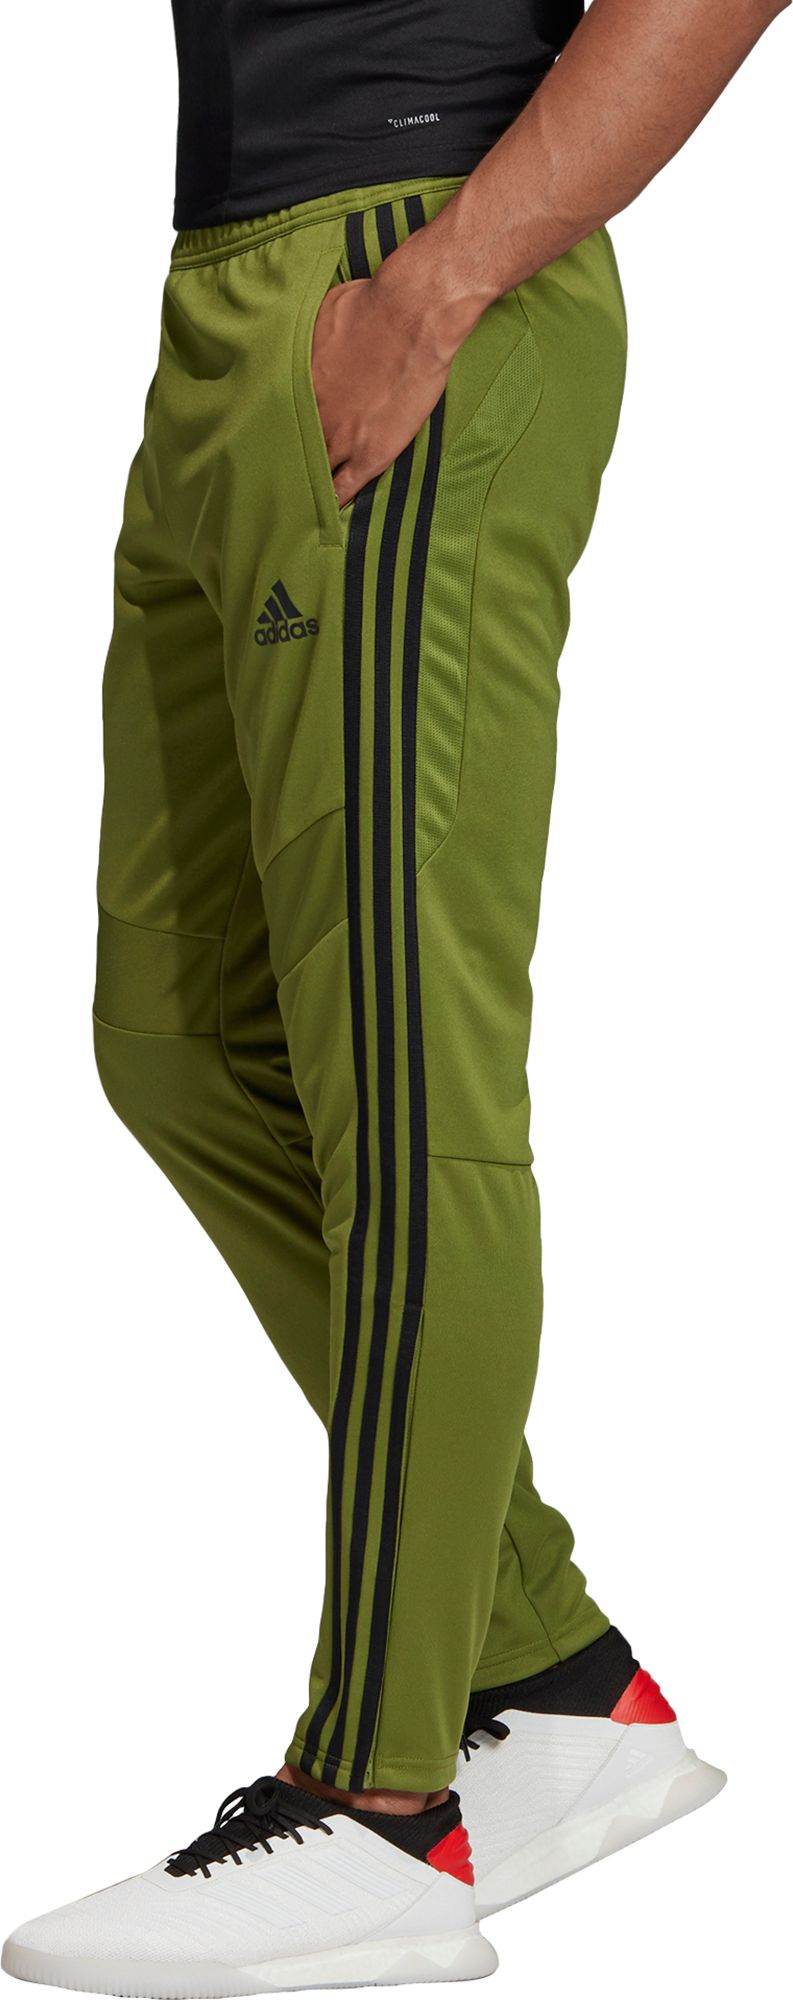 adidas army green pants